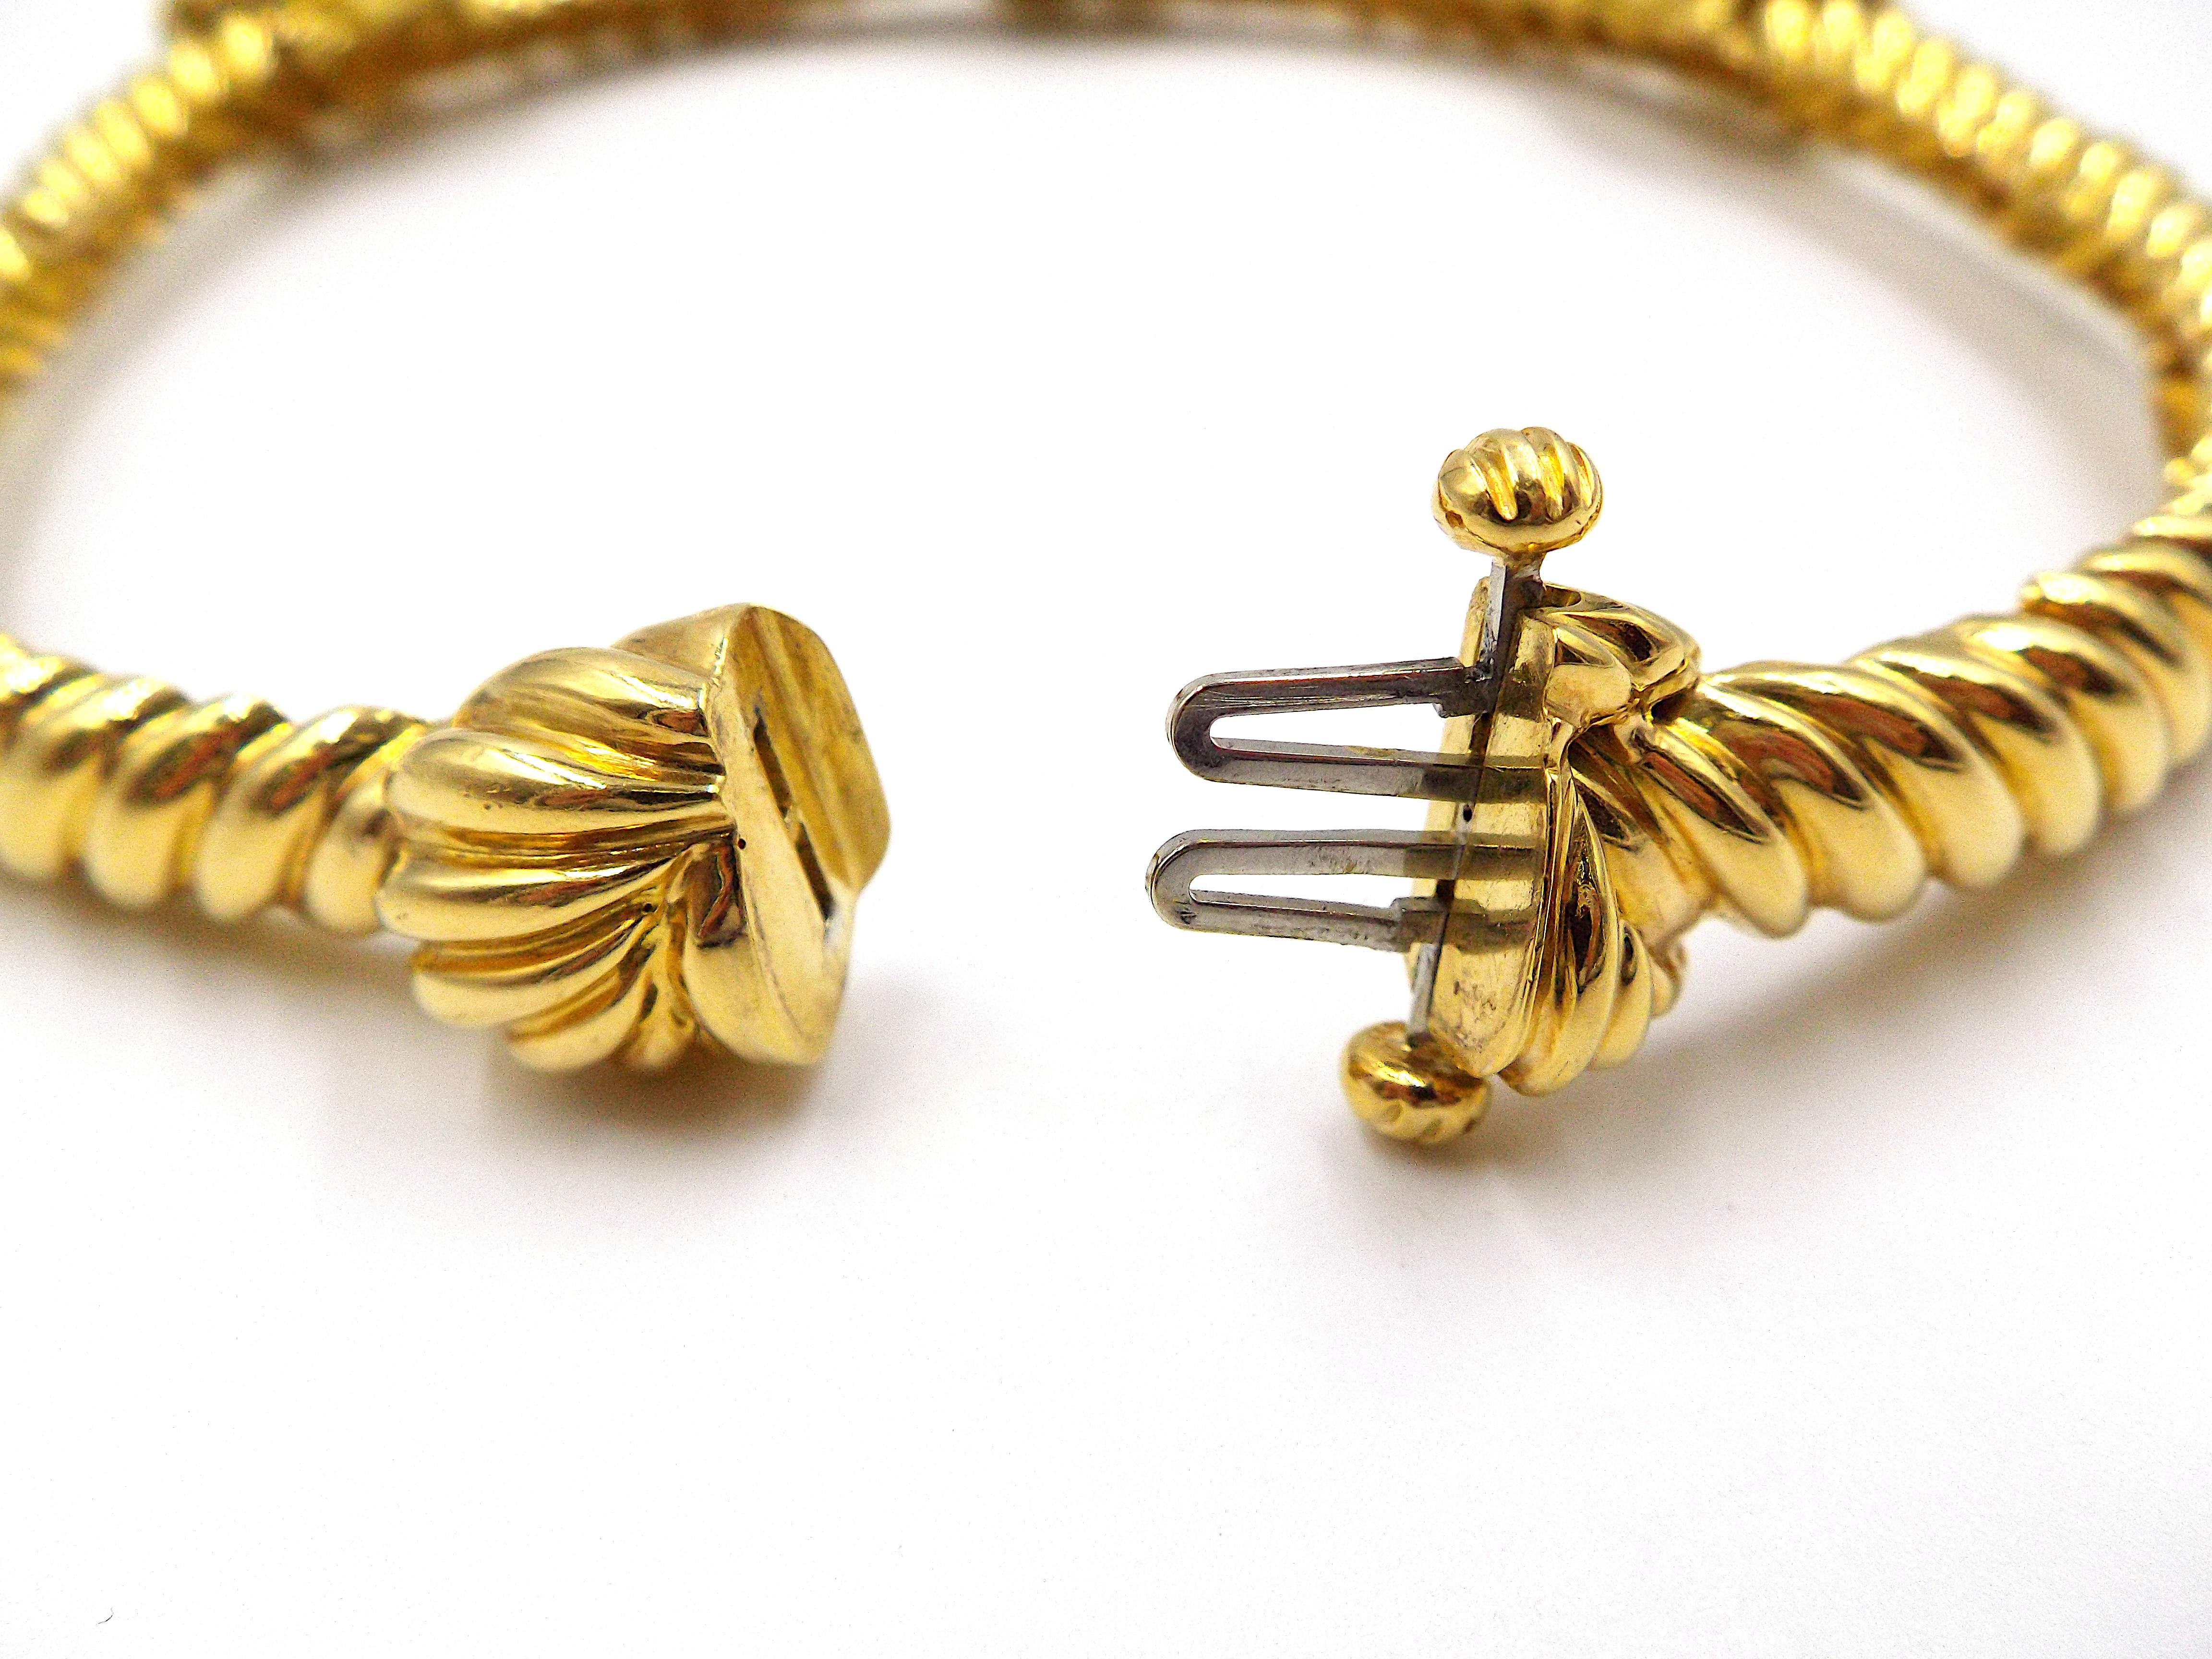 Eine schicke Vintage-Halskette von David Webb in Form eines dicken Seils mit drei realistisch gestalteten Knoten. 18K Gelbgold, signiert David Webb, markiert 18K, nummeriert. Das Gewicht beträgt ca. 132.4g, die Länge beträgt ca. 14